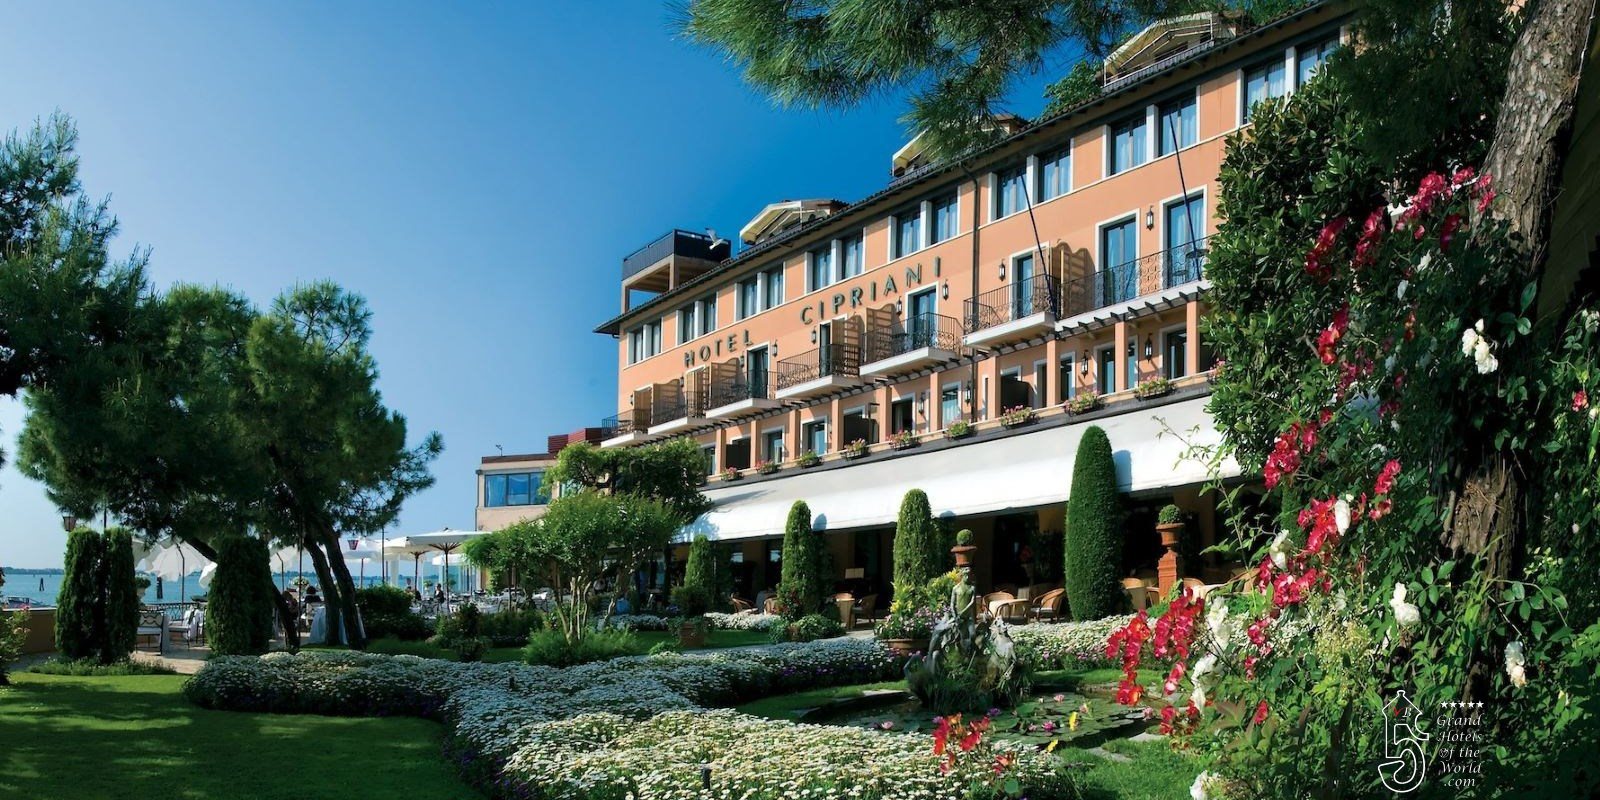 Hotel Cipriani in Venice